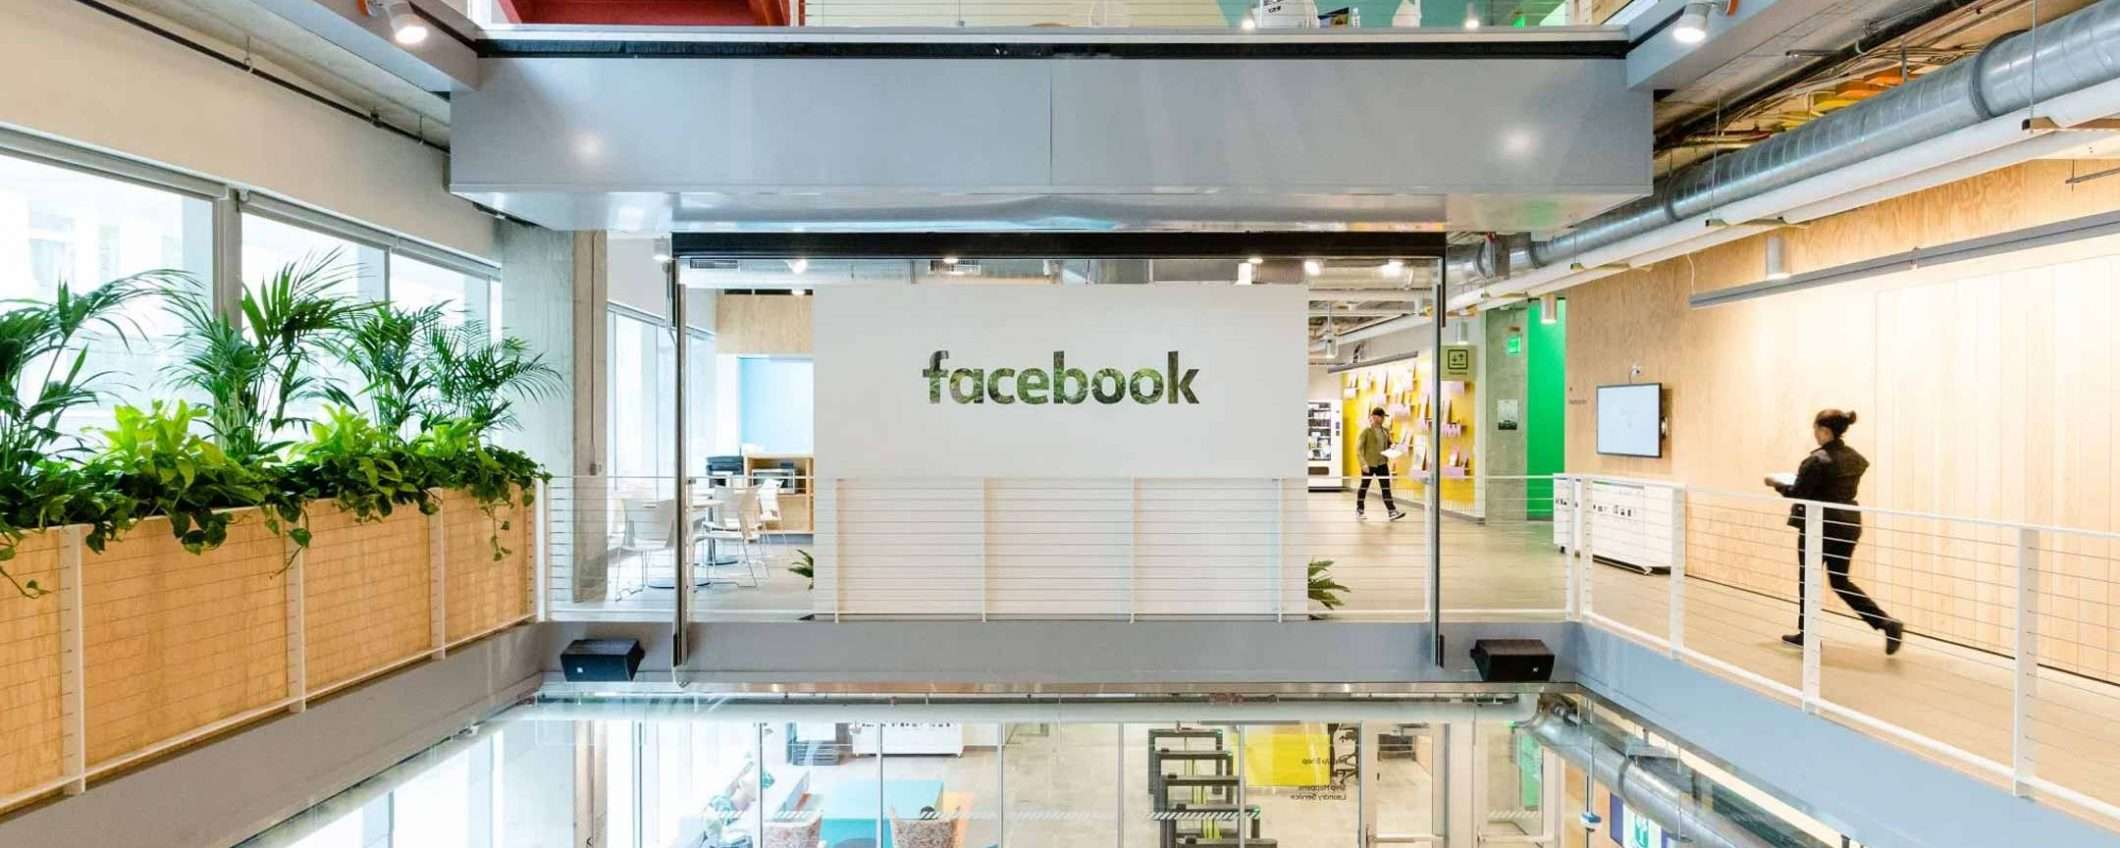 Facebook contro i comportamenti autentici coordinati